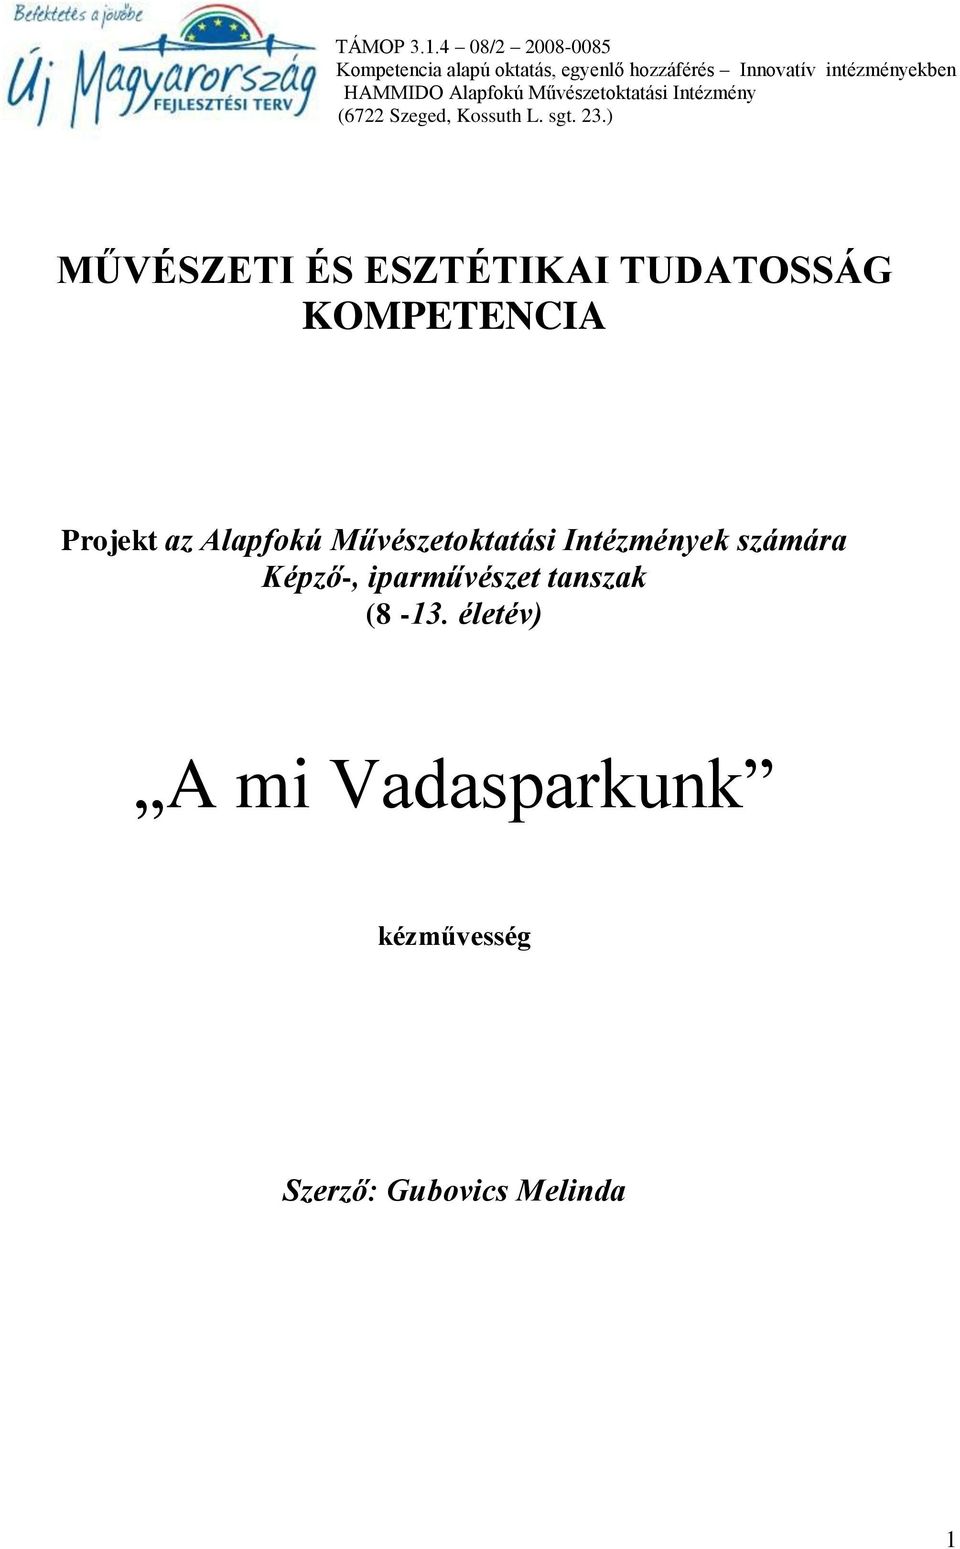 Alapfokú Művészetoktatási Intézmény (6722 Szeged, Kossuth L. sgt. 23.